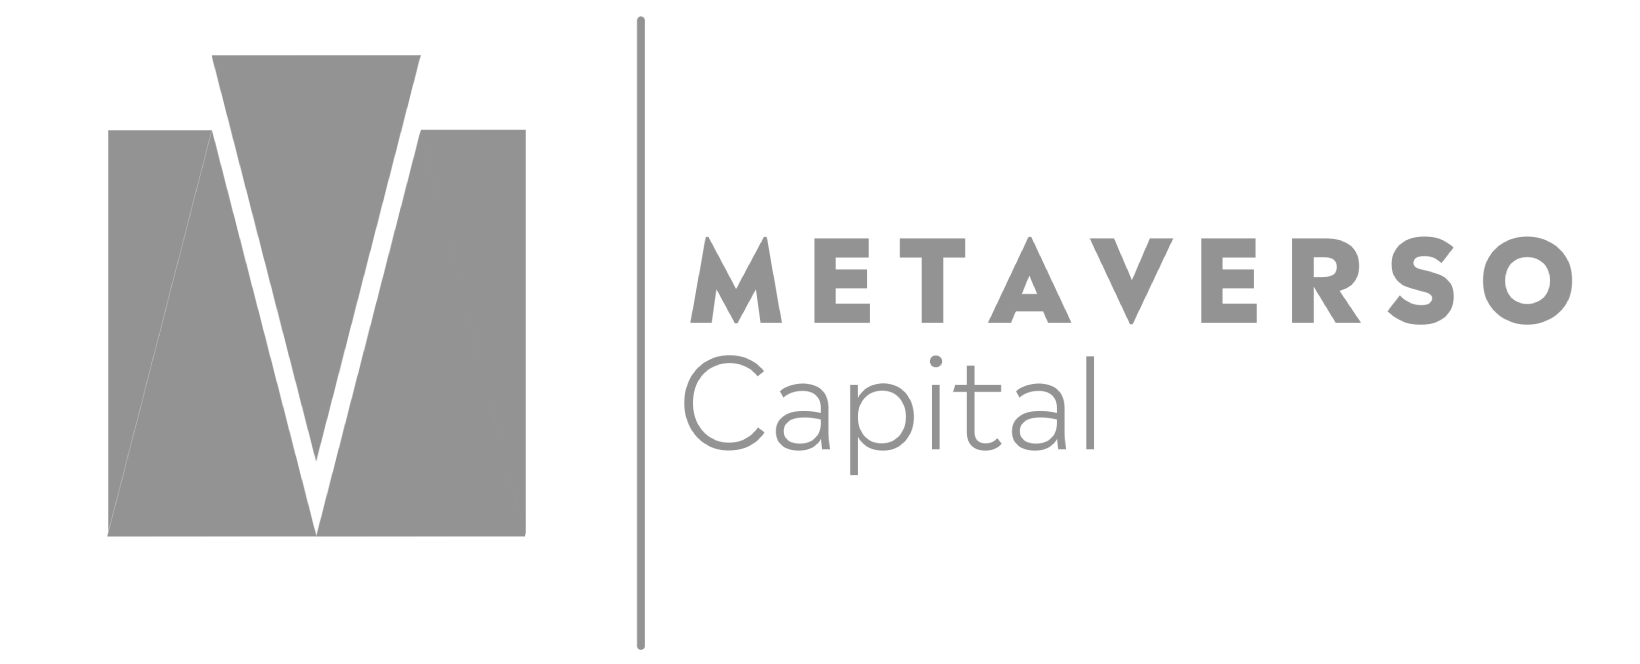 Metaverso Capital